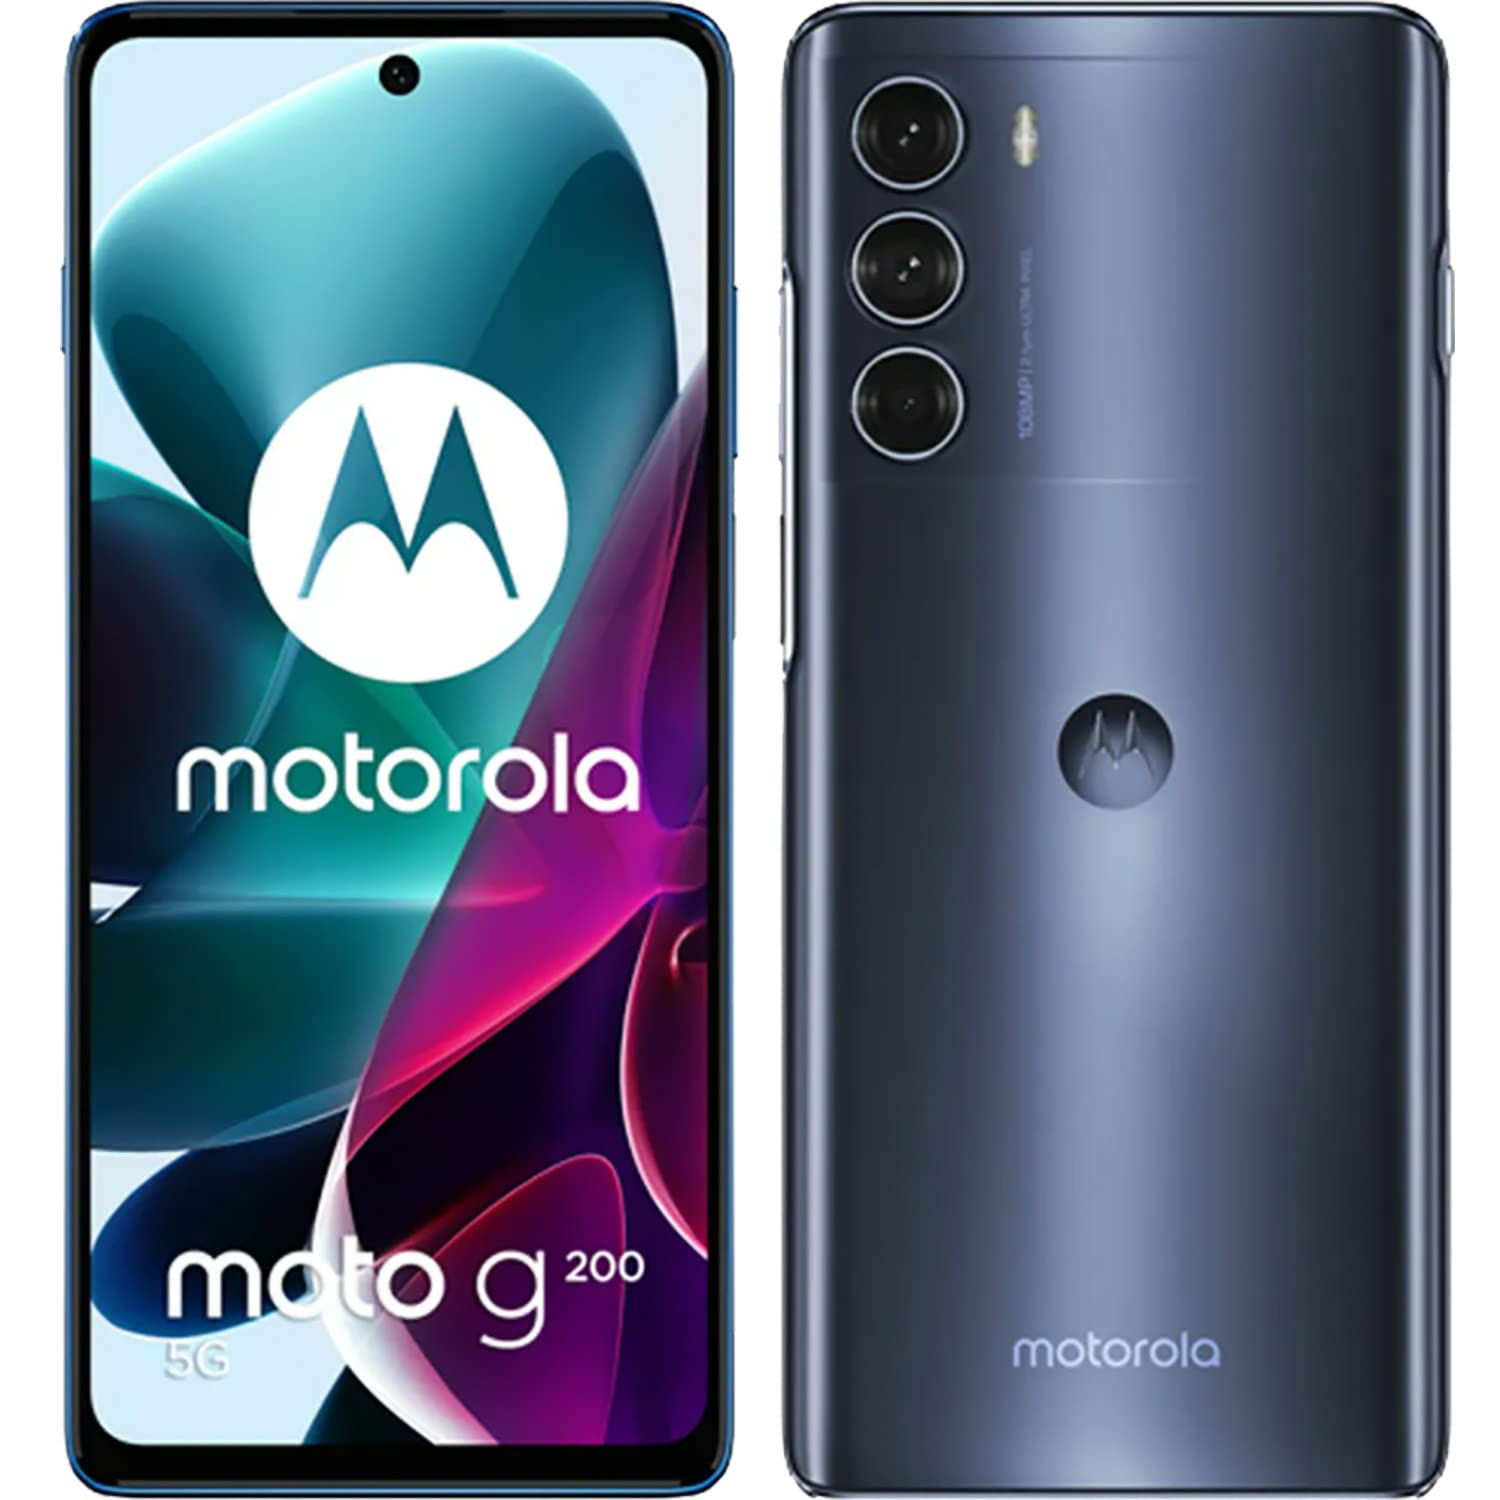  Motorola 